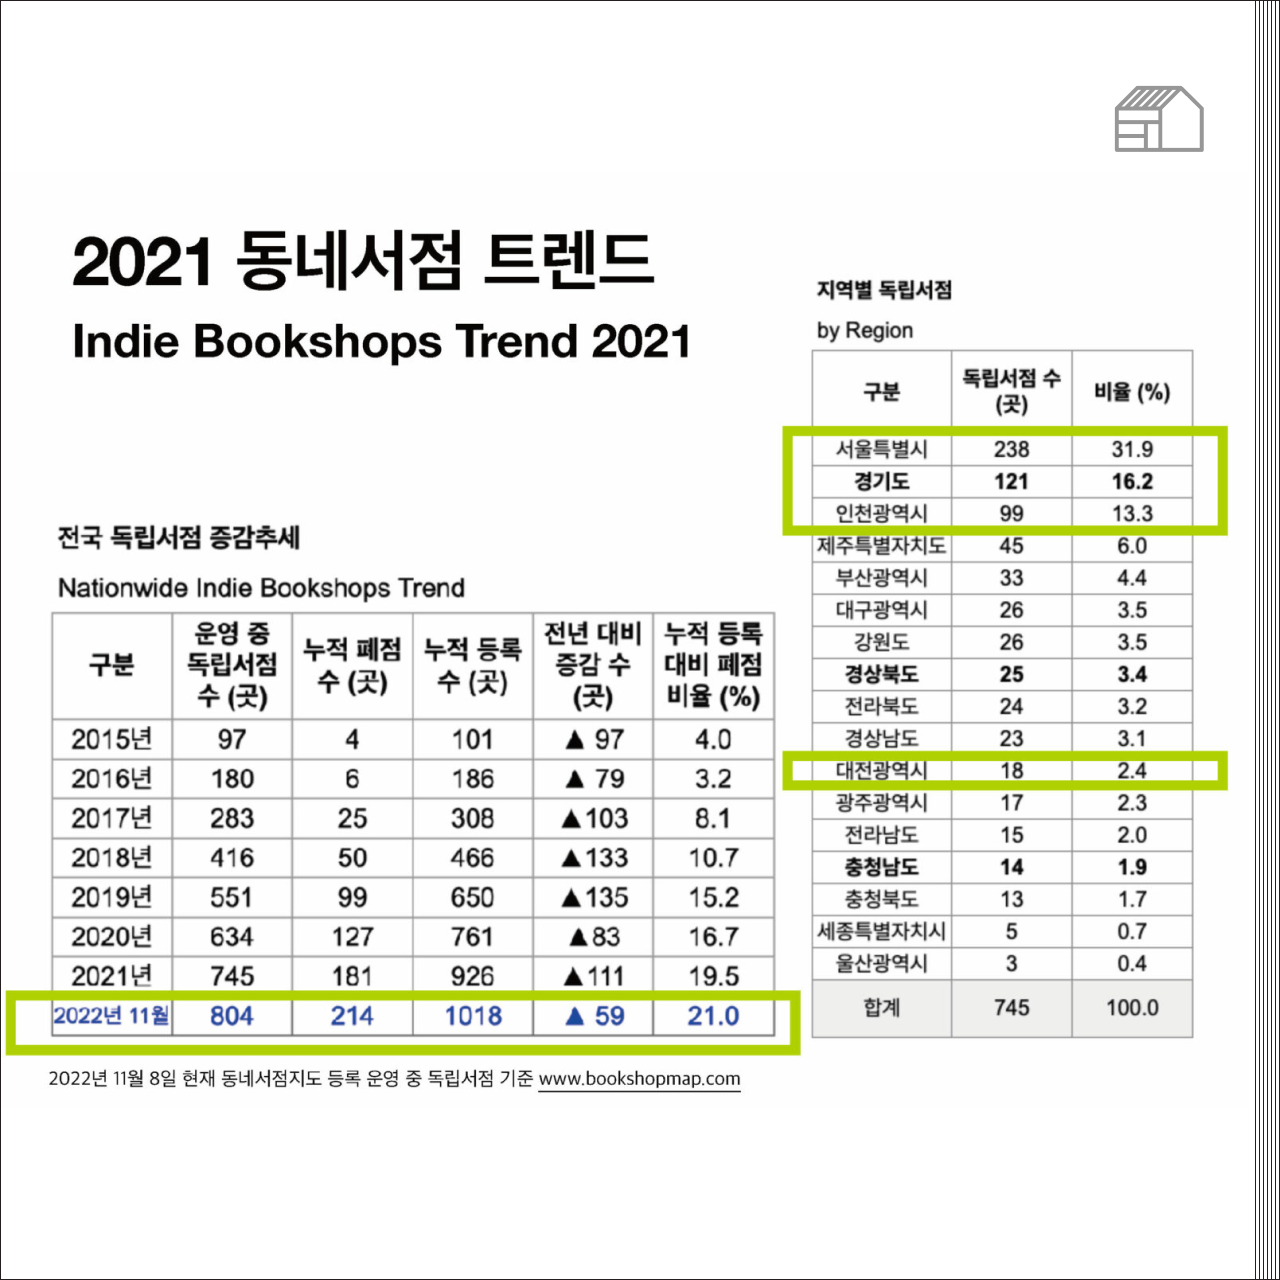 #동네서점트렌드 Q4 2022: 대전광역시를 중심으로